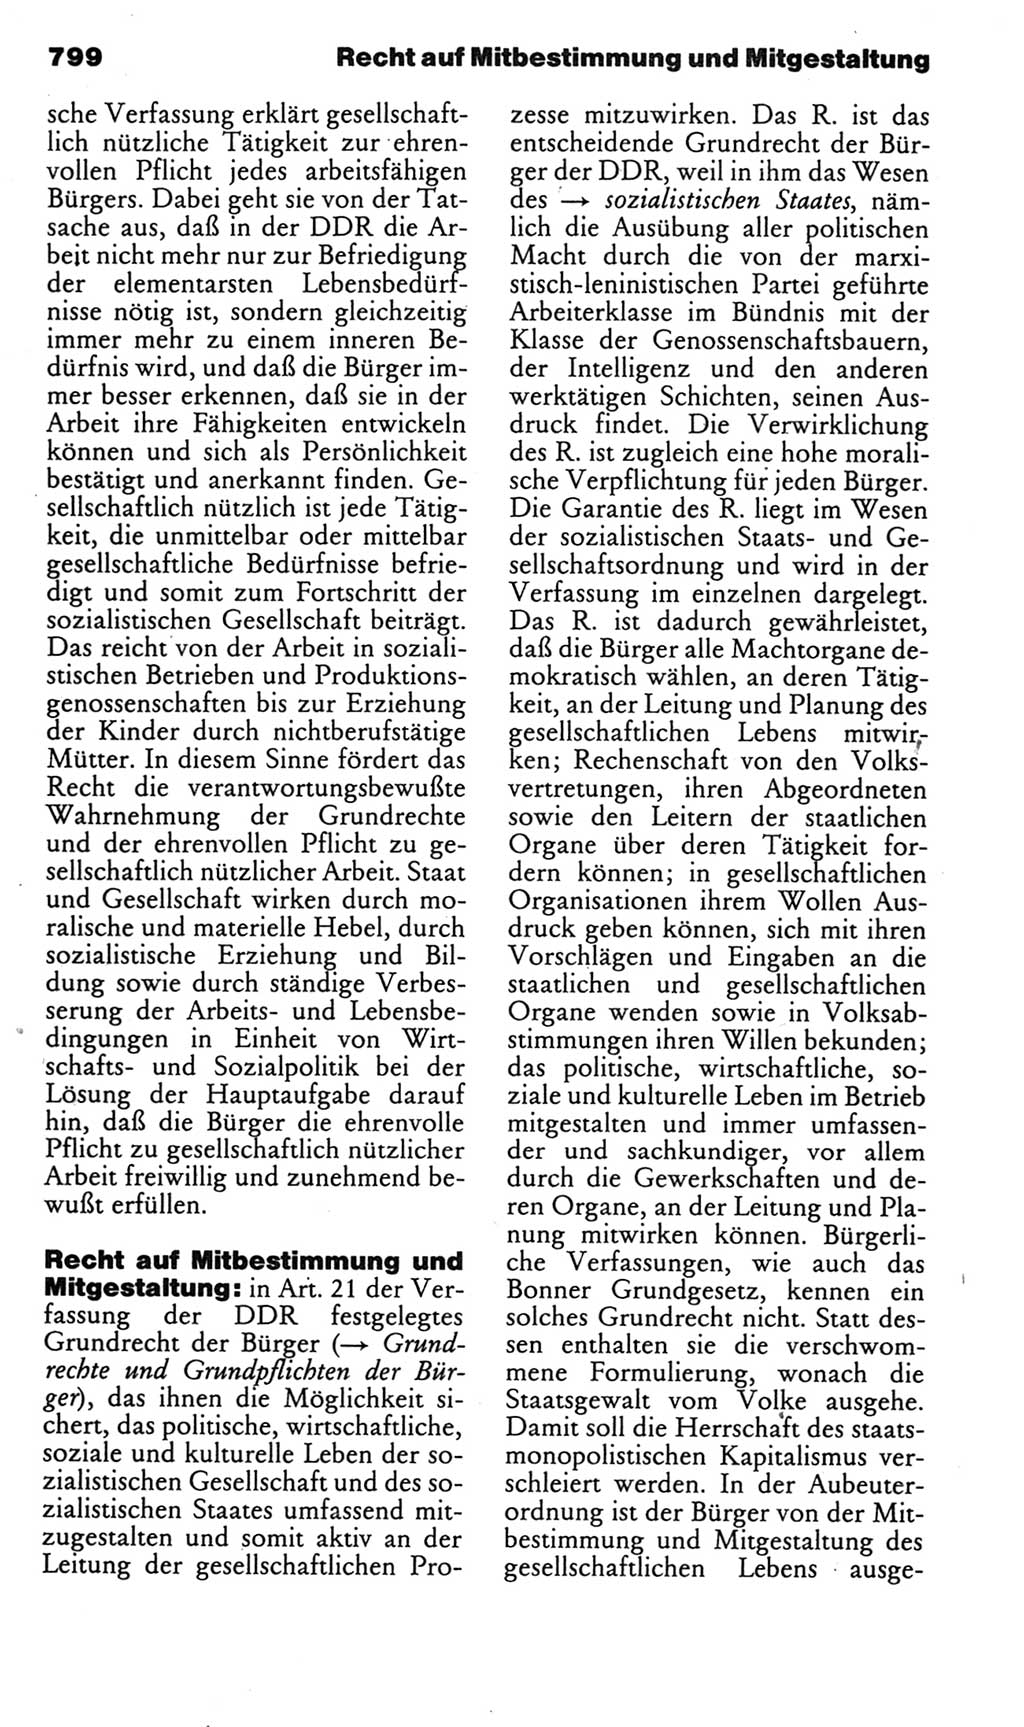 Kleines politisches Wörterbuch [Deutsche Demokratische Republik (DDR)] 1985, Seite 799 (Kl. pol. Wb. DDR 1985, S. 799)